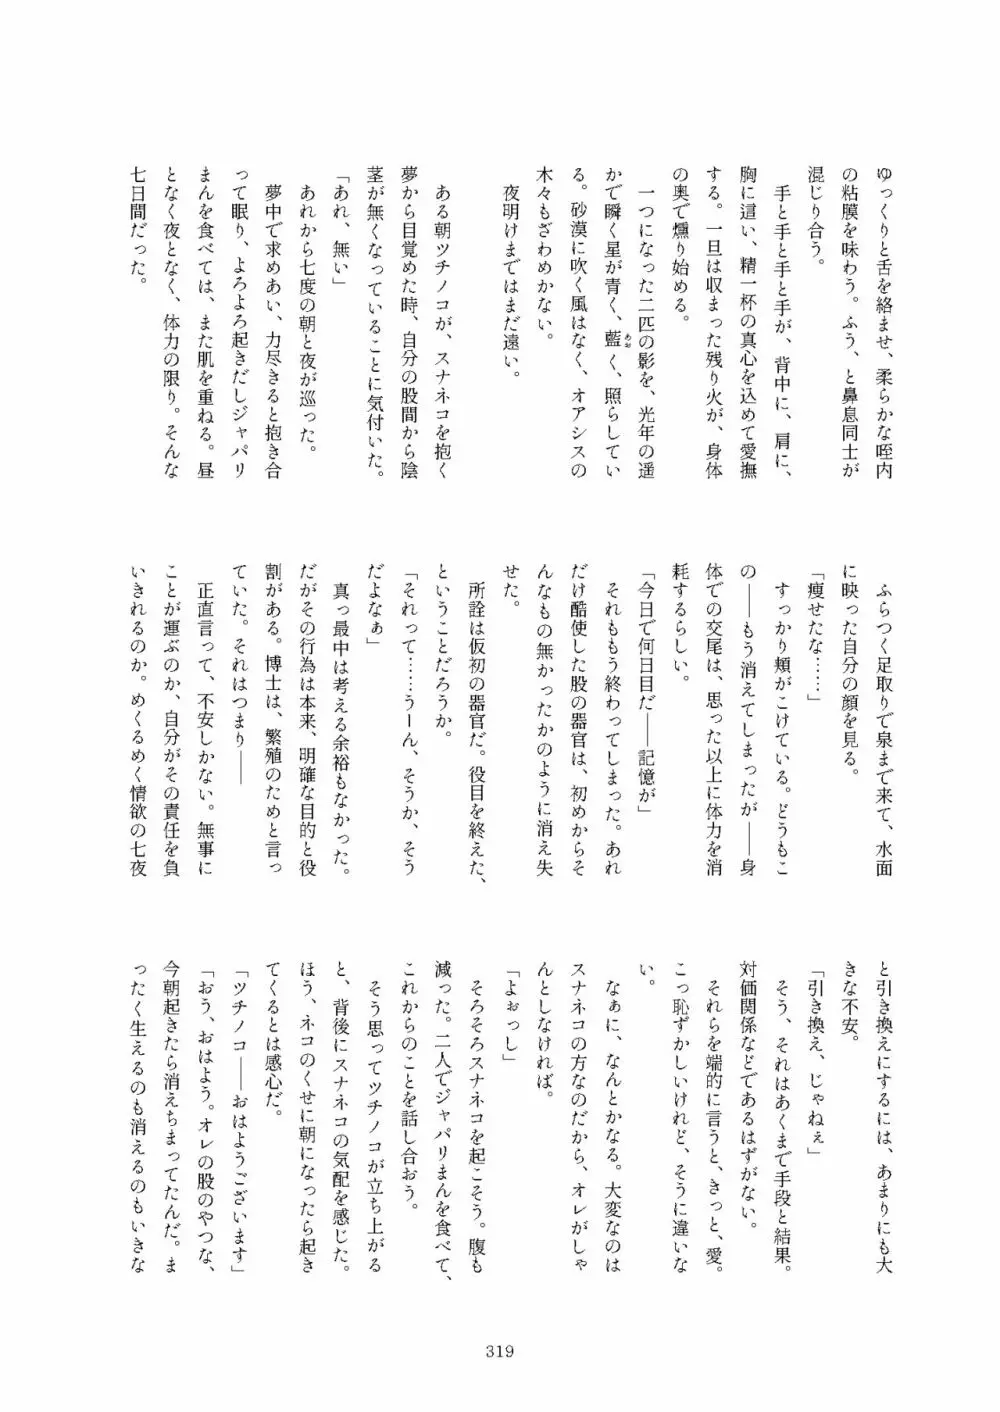 フレンズまえしっぽ合同誌 - page319